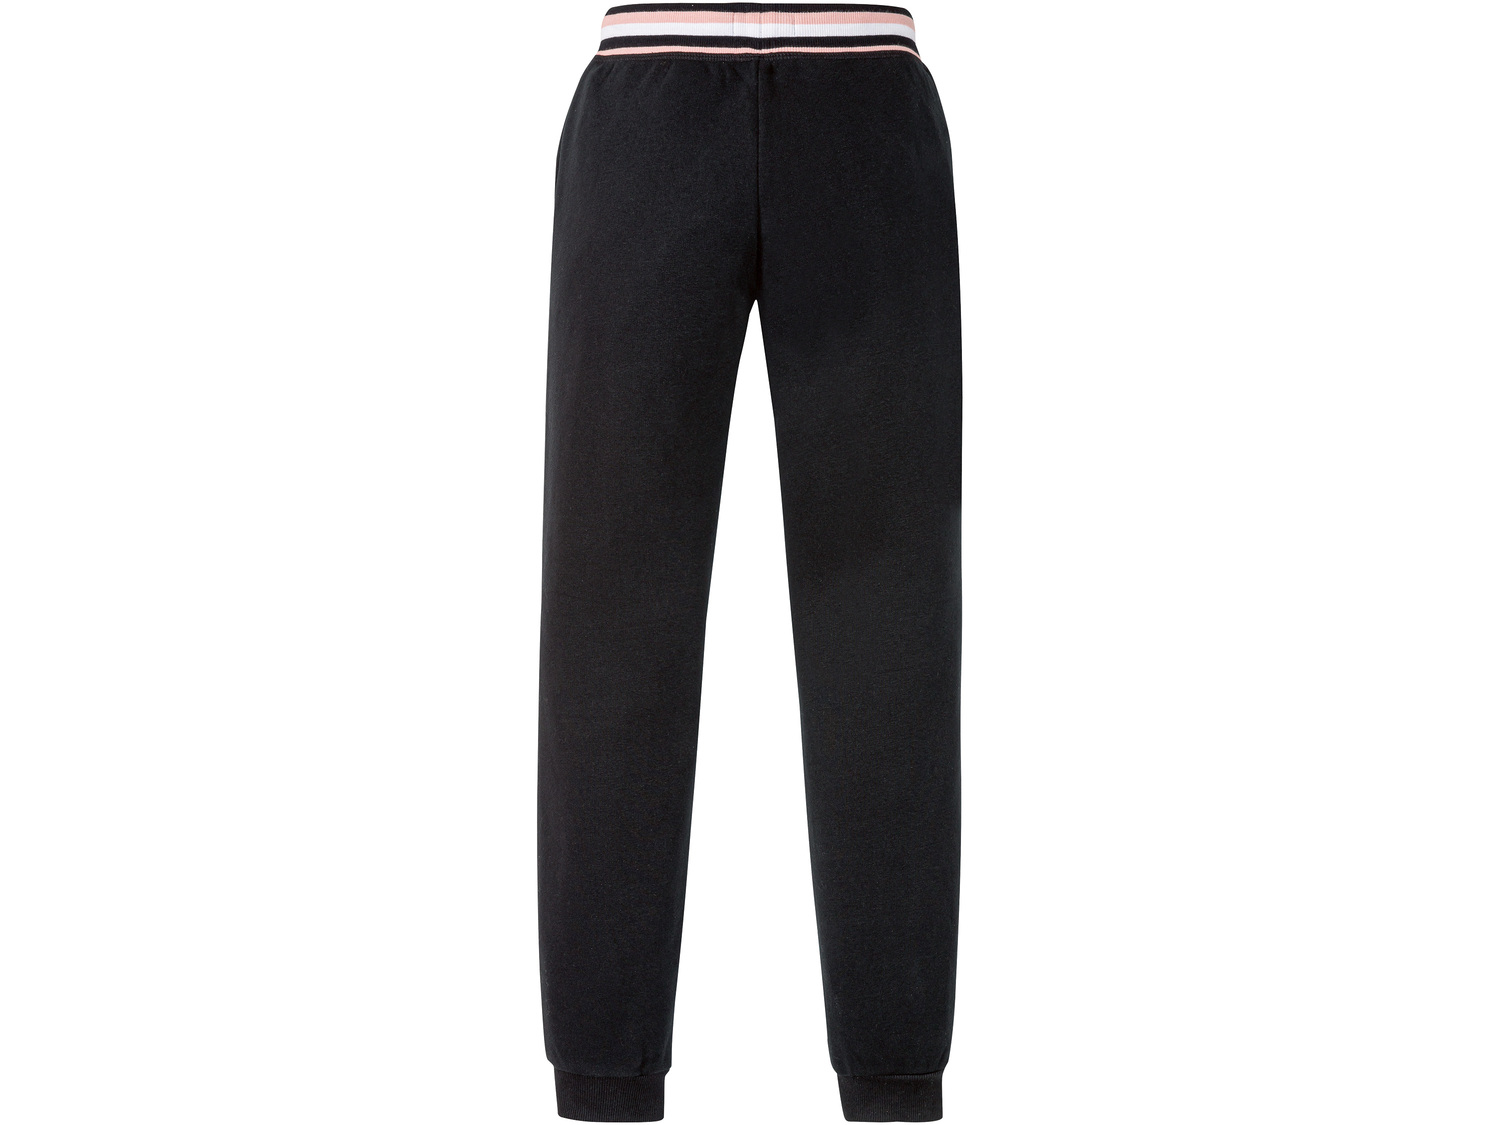 Spodnie dresowe młodzieżowe Pepperts, cena 29,99 PLN 
- rozmiary 122-164
- wysoka ...